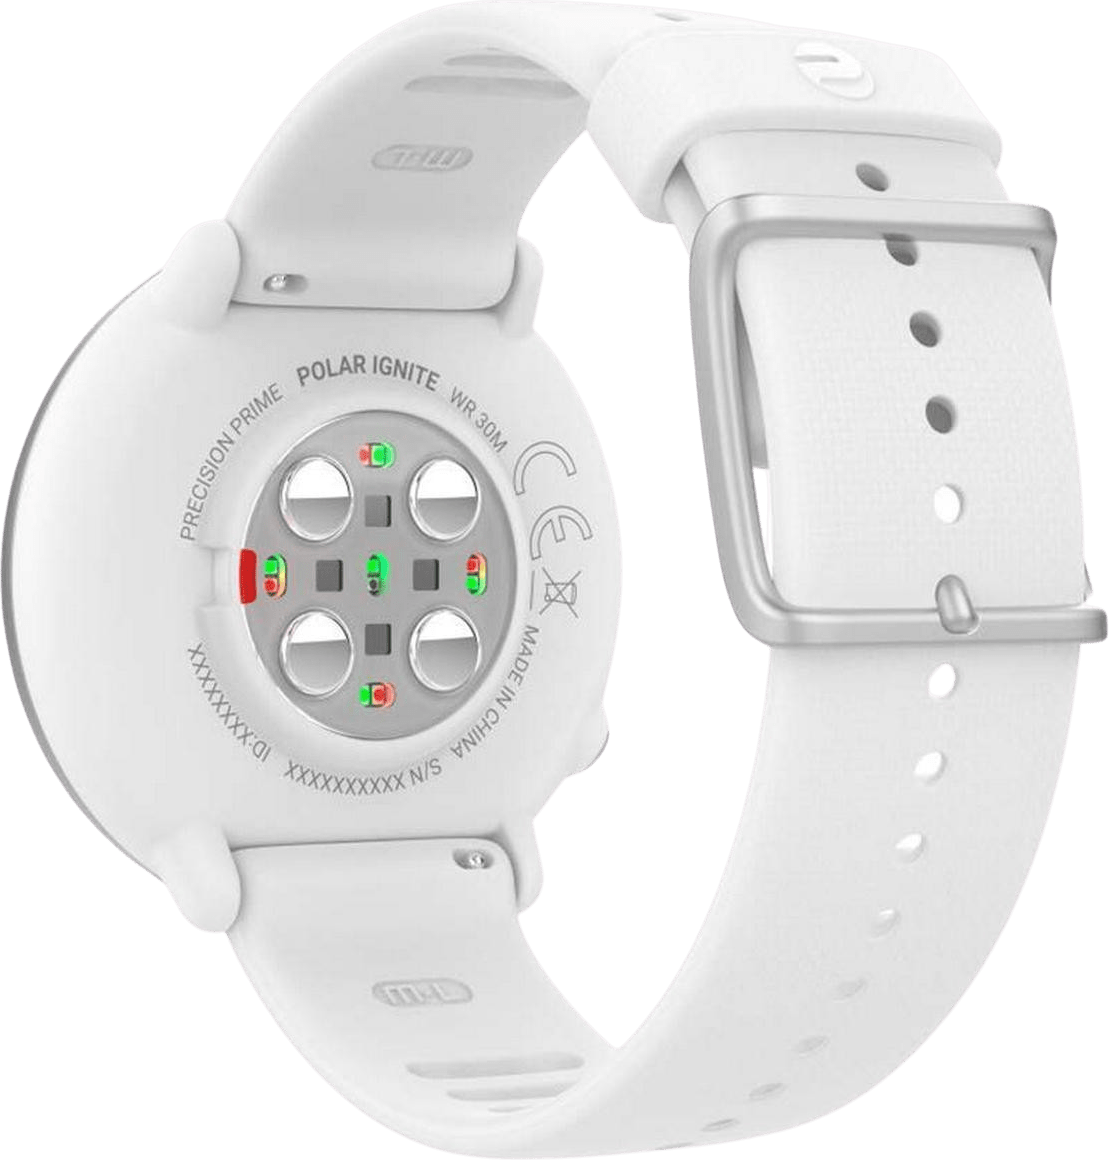 Blanco Polar Ignite GPS Sports watch, S.2